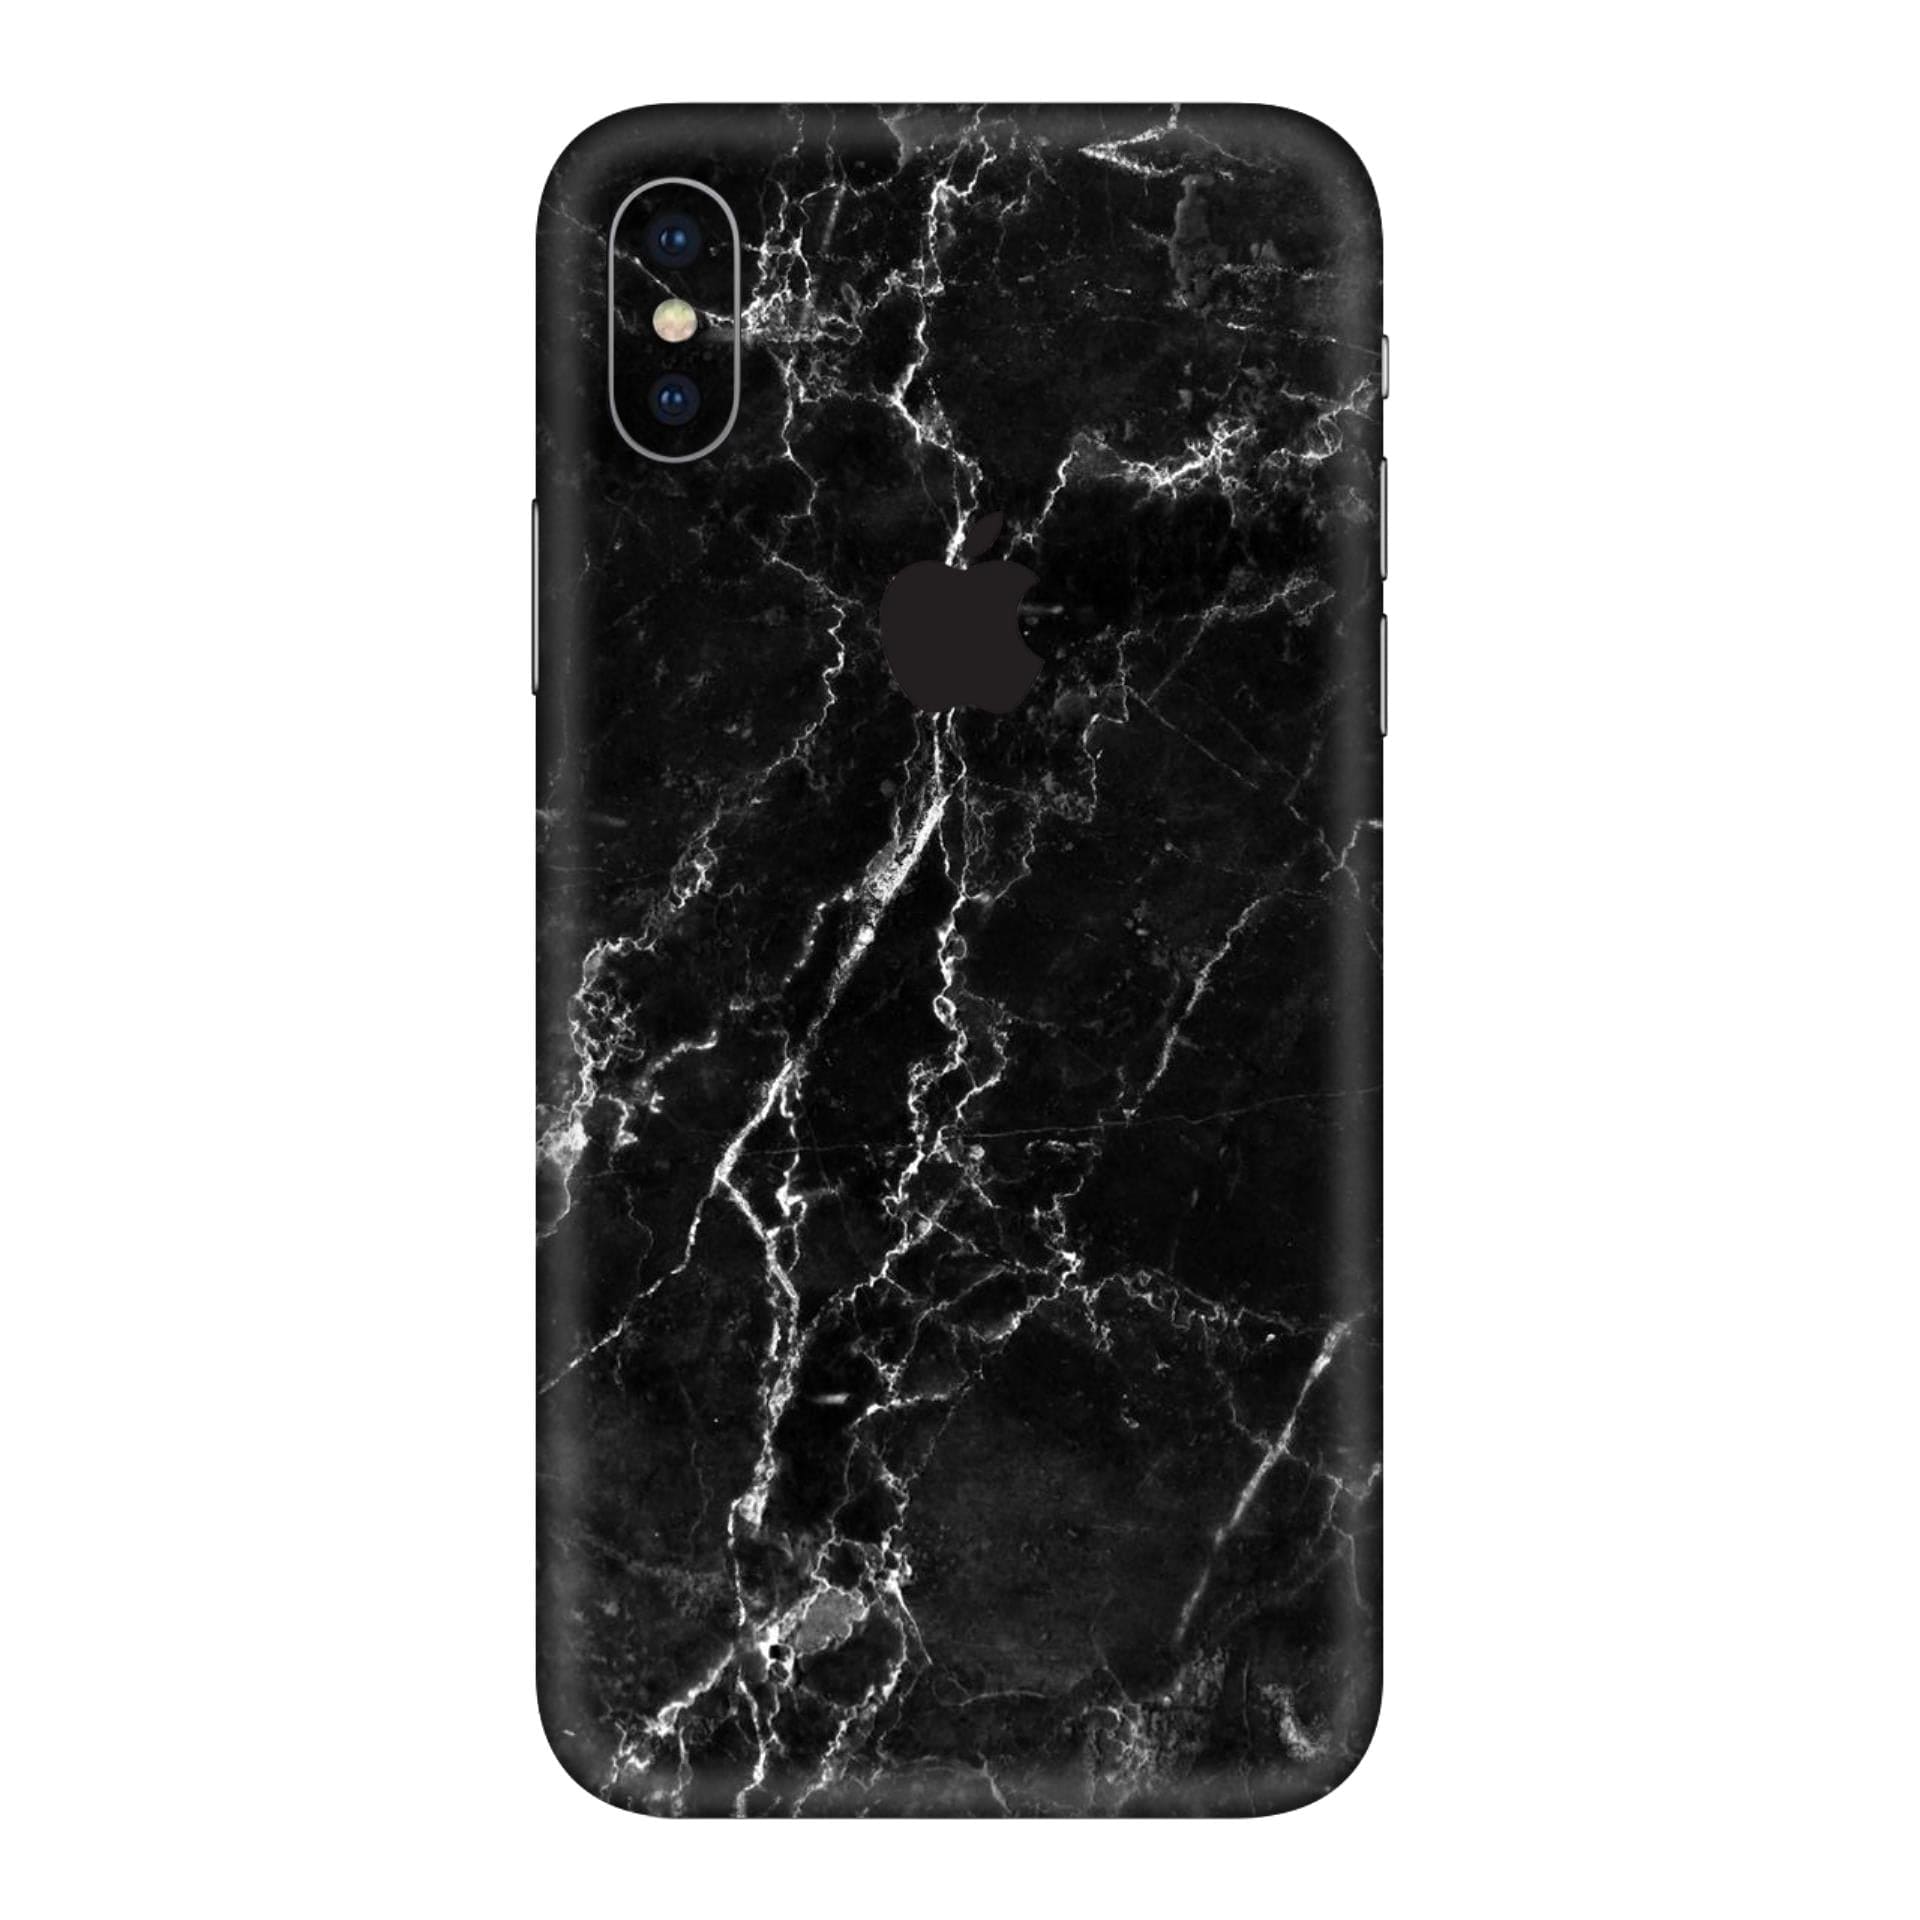 iphone X Black Marble skins